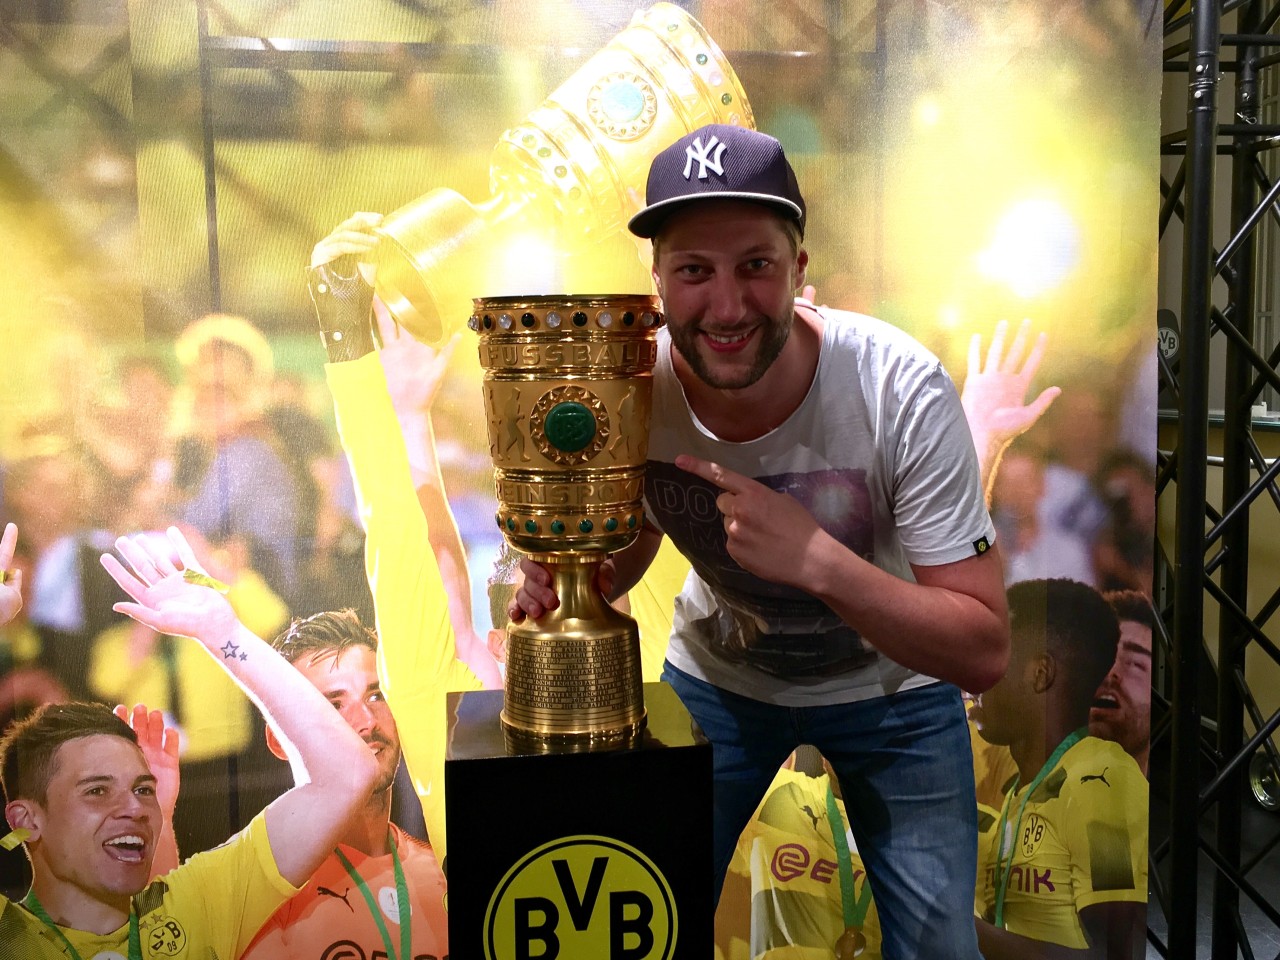 Einmal den Pokal anfassen - der BVB ermöglicht es seinen Fans.